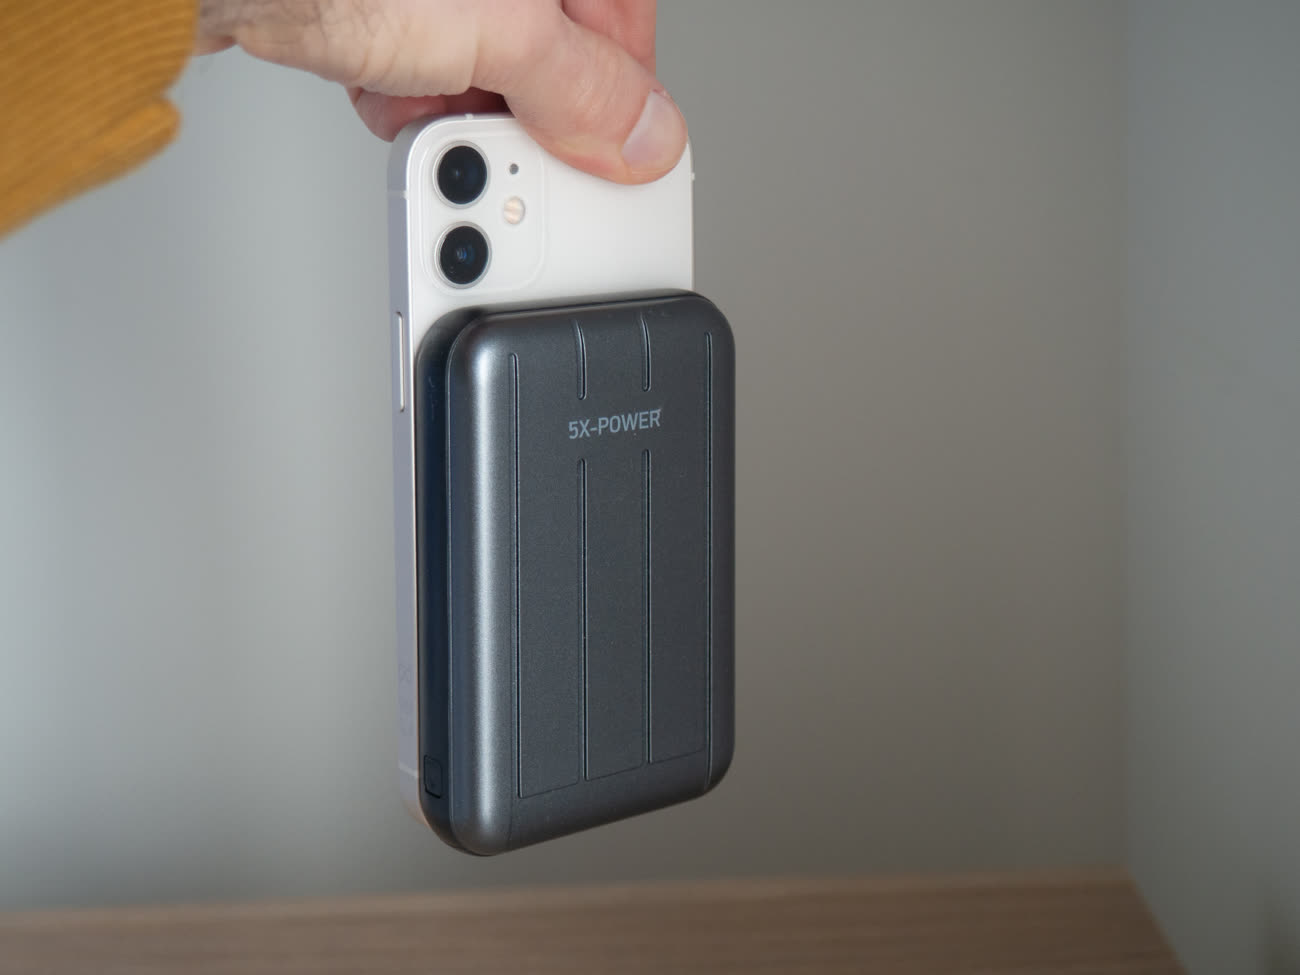 Les premiers clients ont reçu la batterie externe MagSafe d'Apple - iPhone  Soft